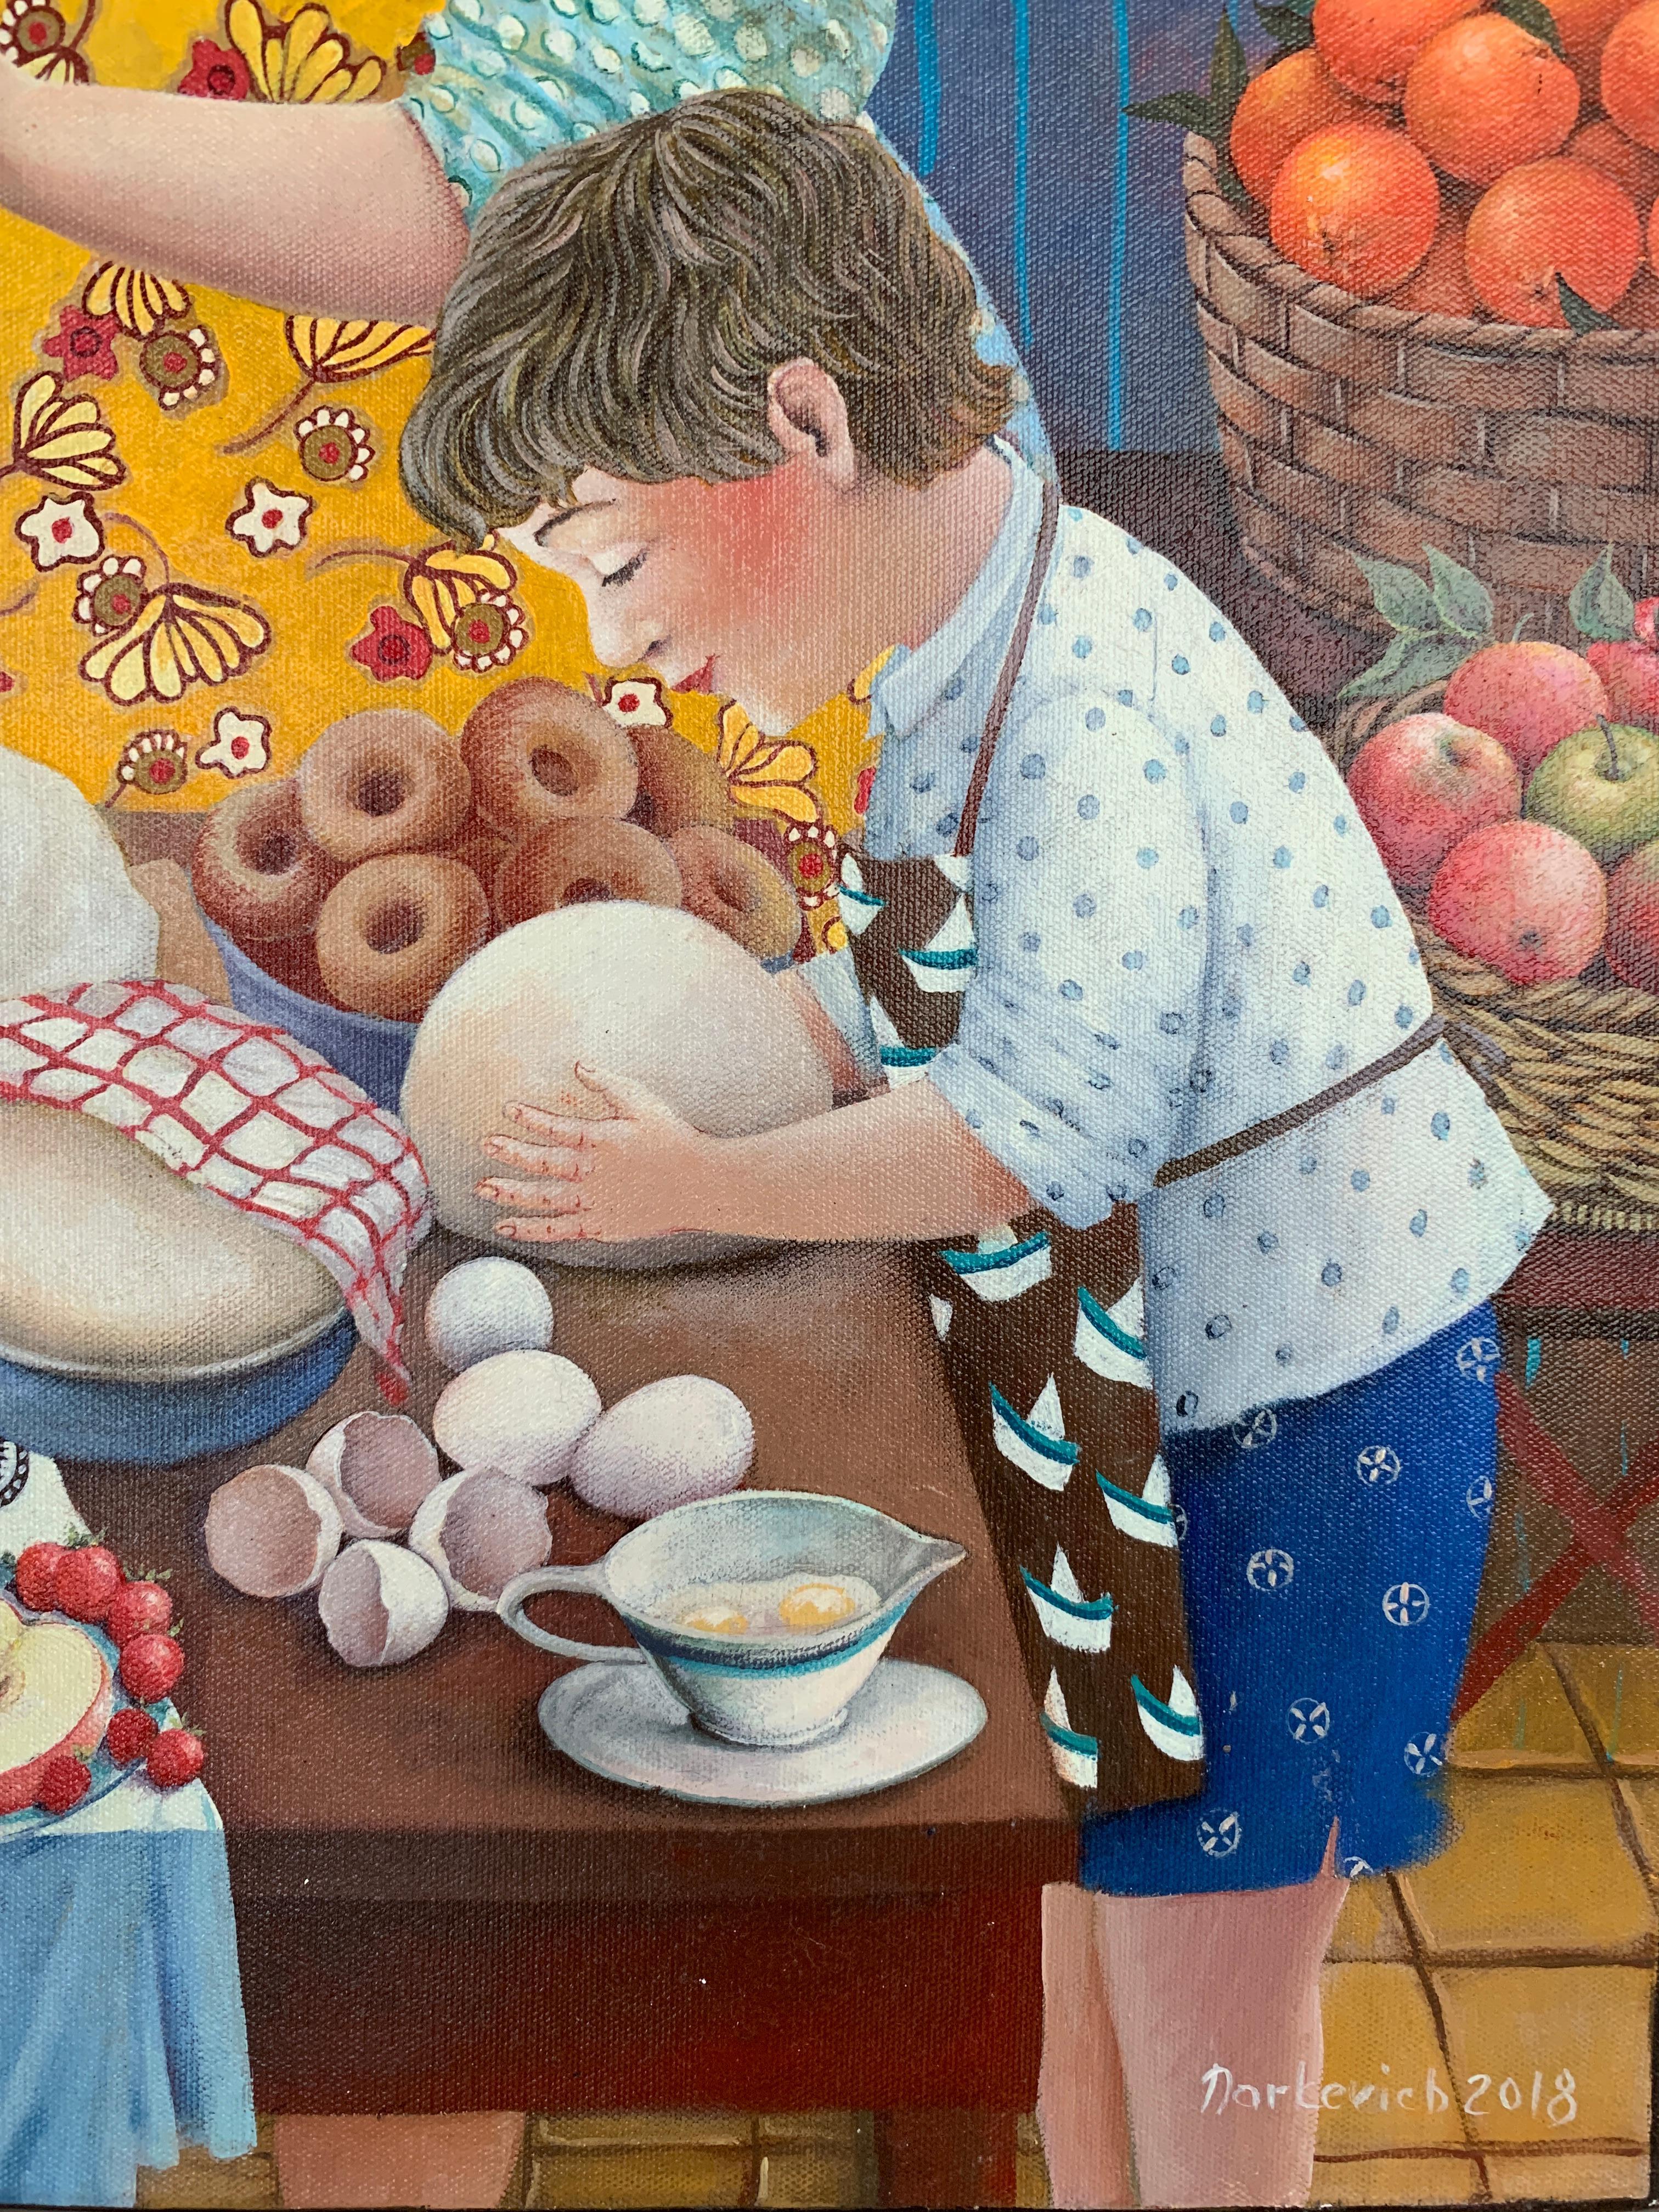 routine du matin de la fabrication du pain et de la pâtisserie - Painting de Elena Narkevich